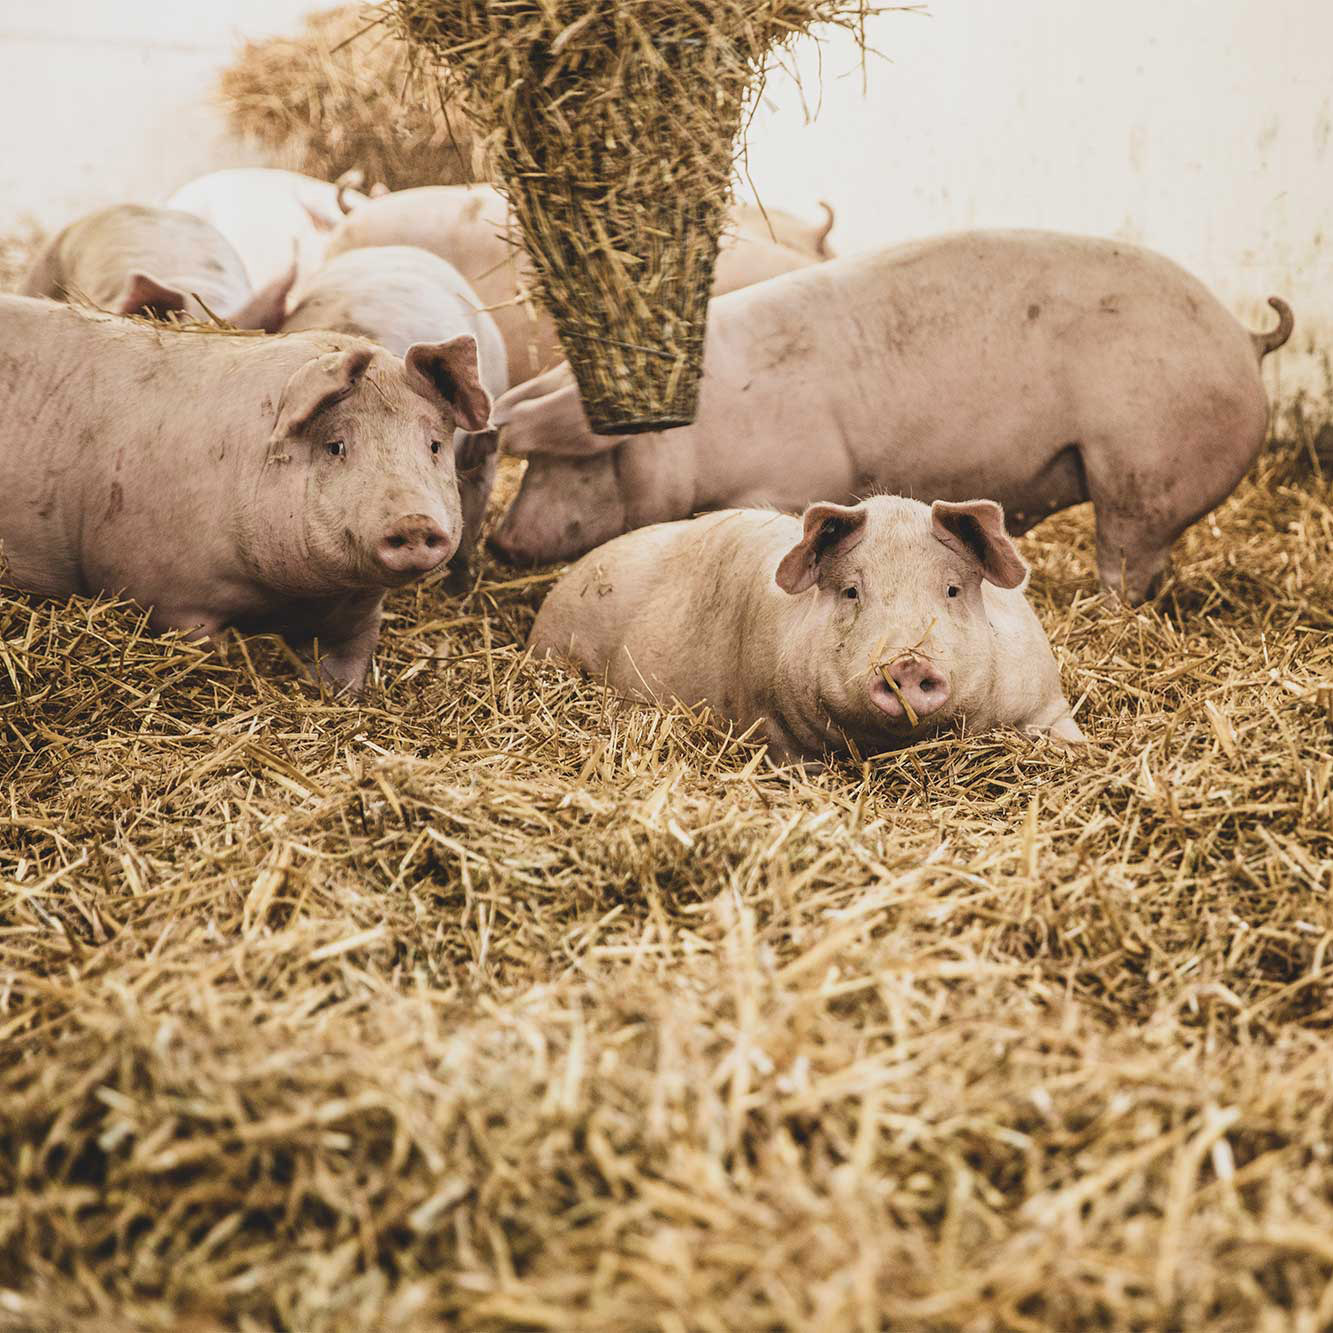 Sieben Schweine liegen im Stroh, zwei davon schauen in die Kamera.